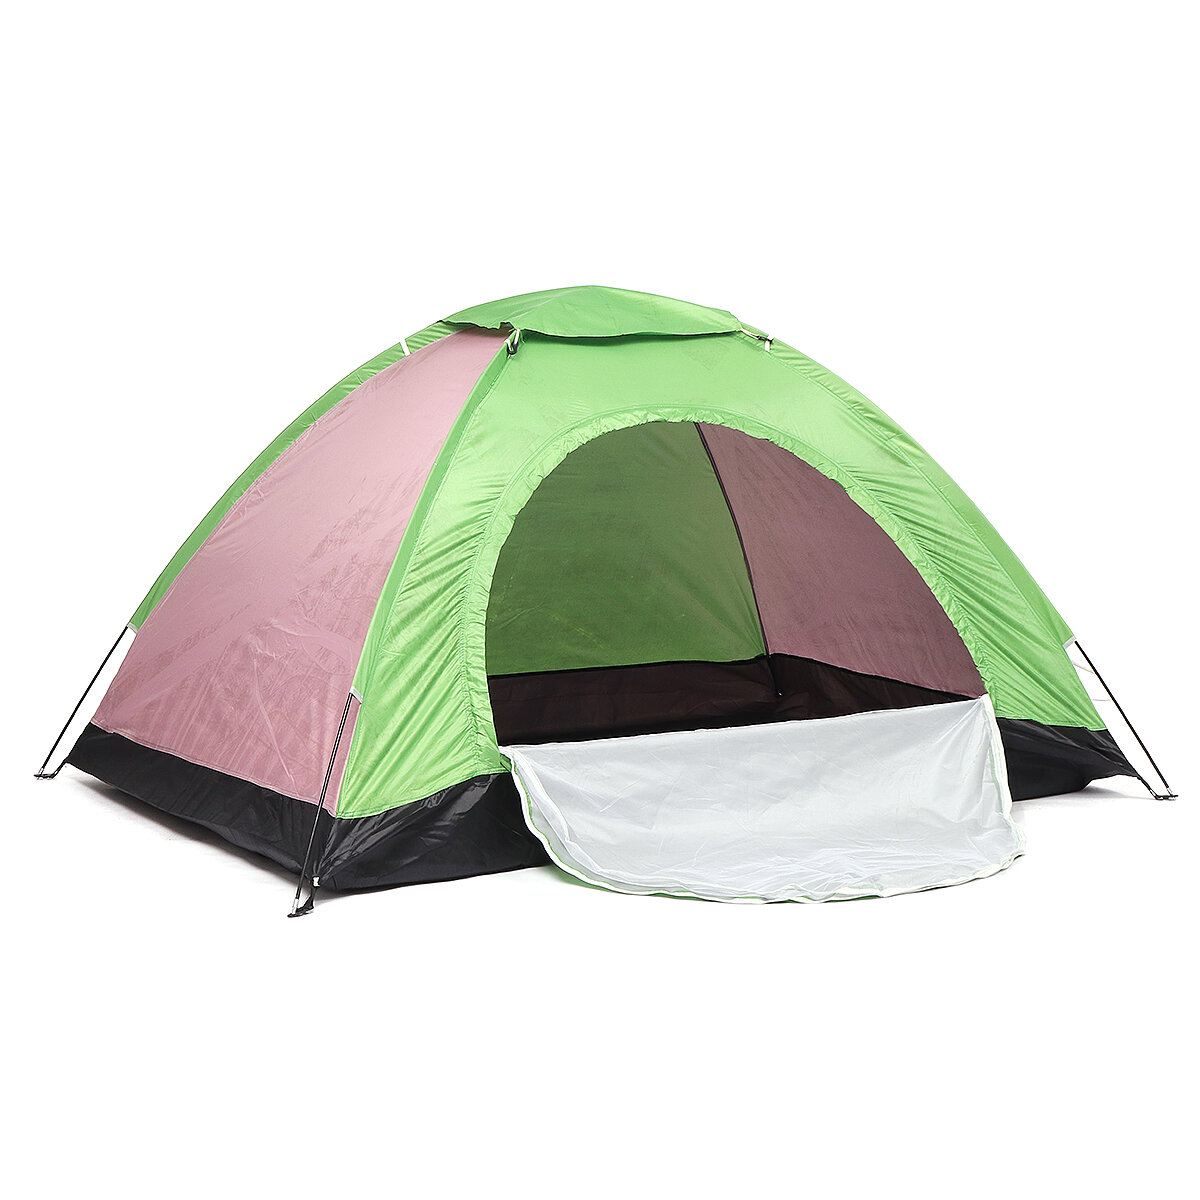 Tente de camping automatique pour 2 personnes, imperméable et résistante aux UV, avec auvent pare-soleil